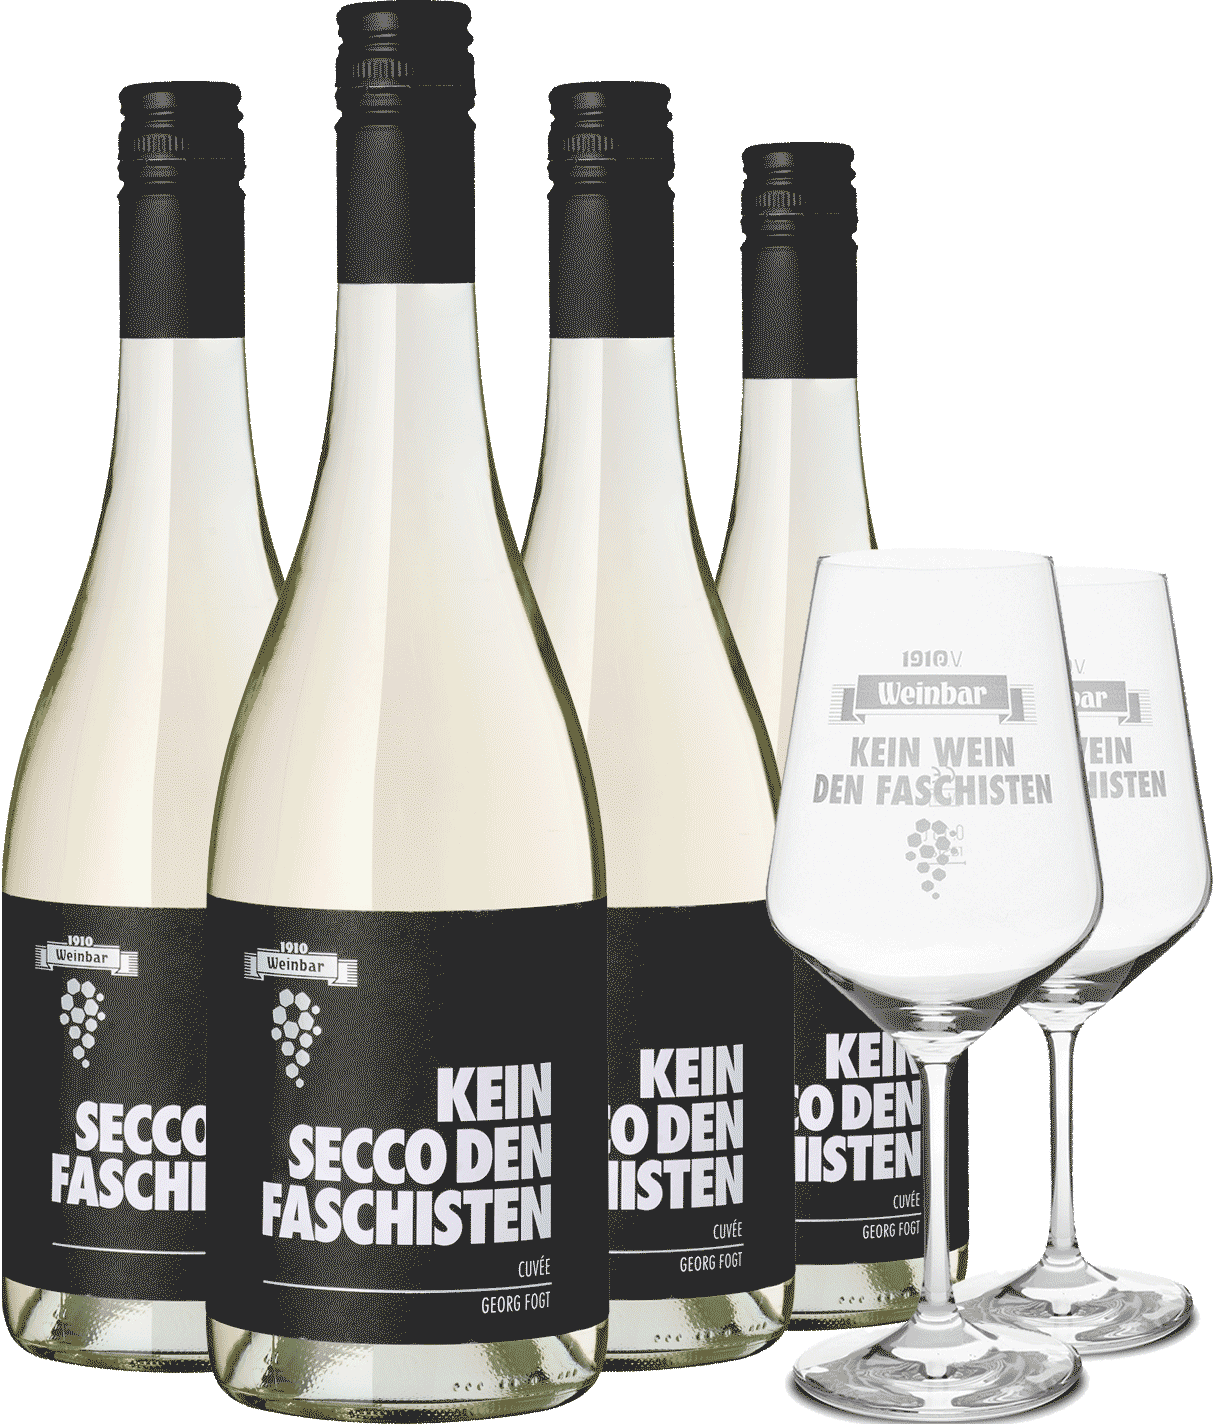 4er "Kein Secco den Faschisten" + Gläser